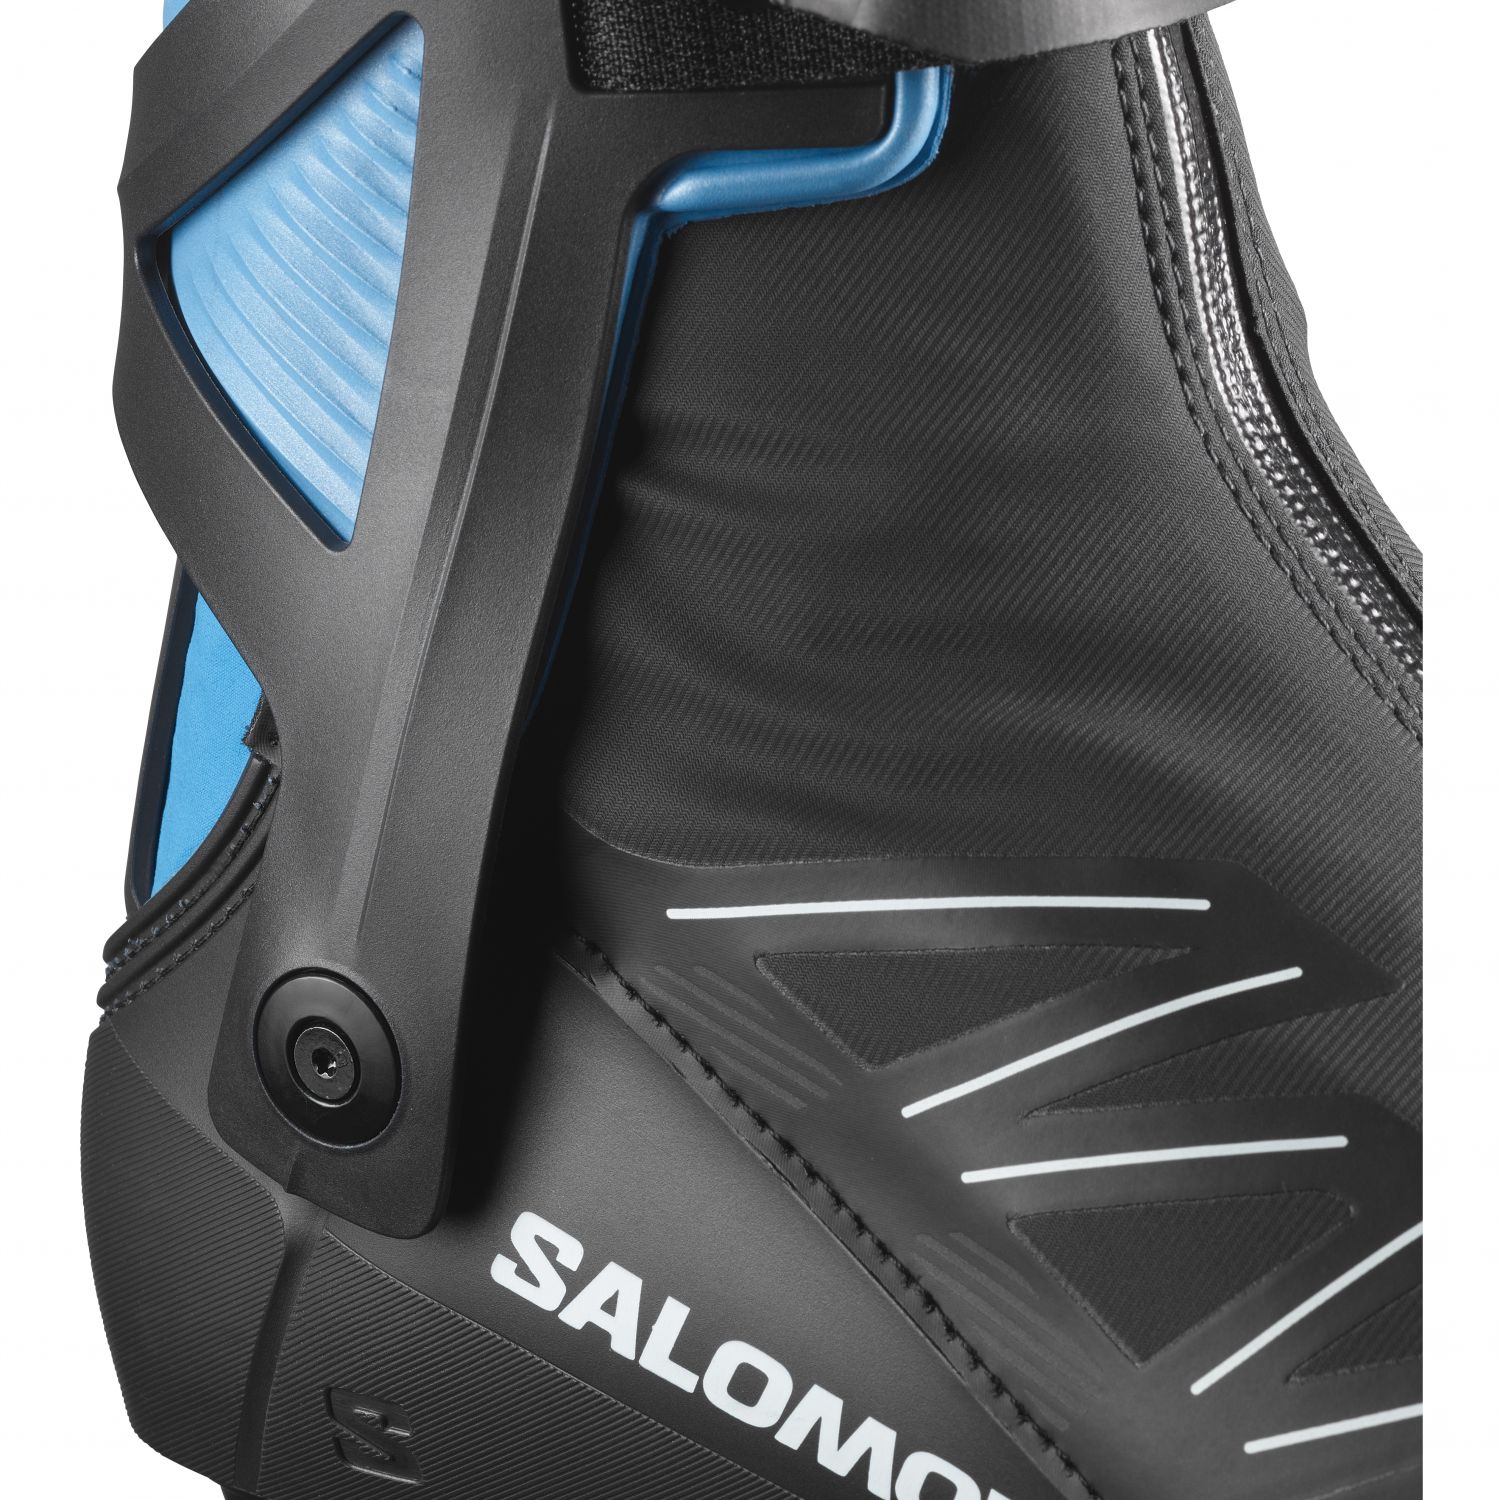 Salomon RS8 Prolink, langlaufschoenen, heren, donkerblauw